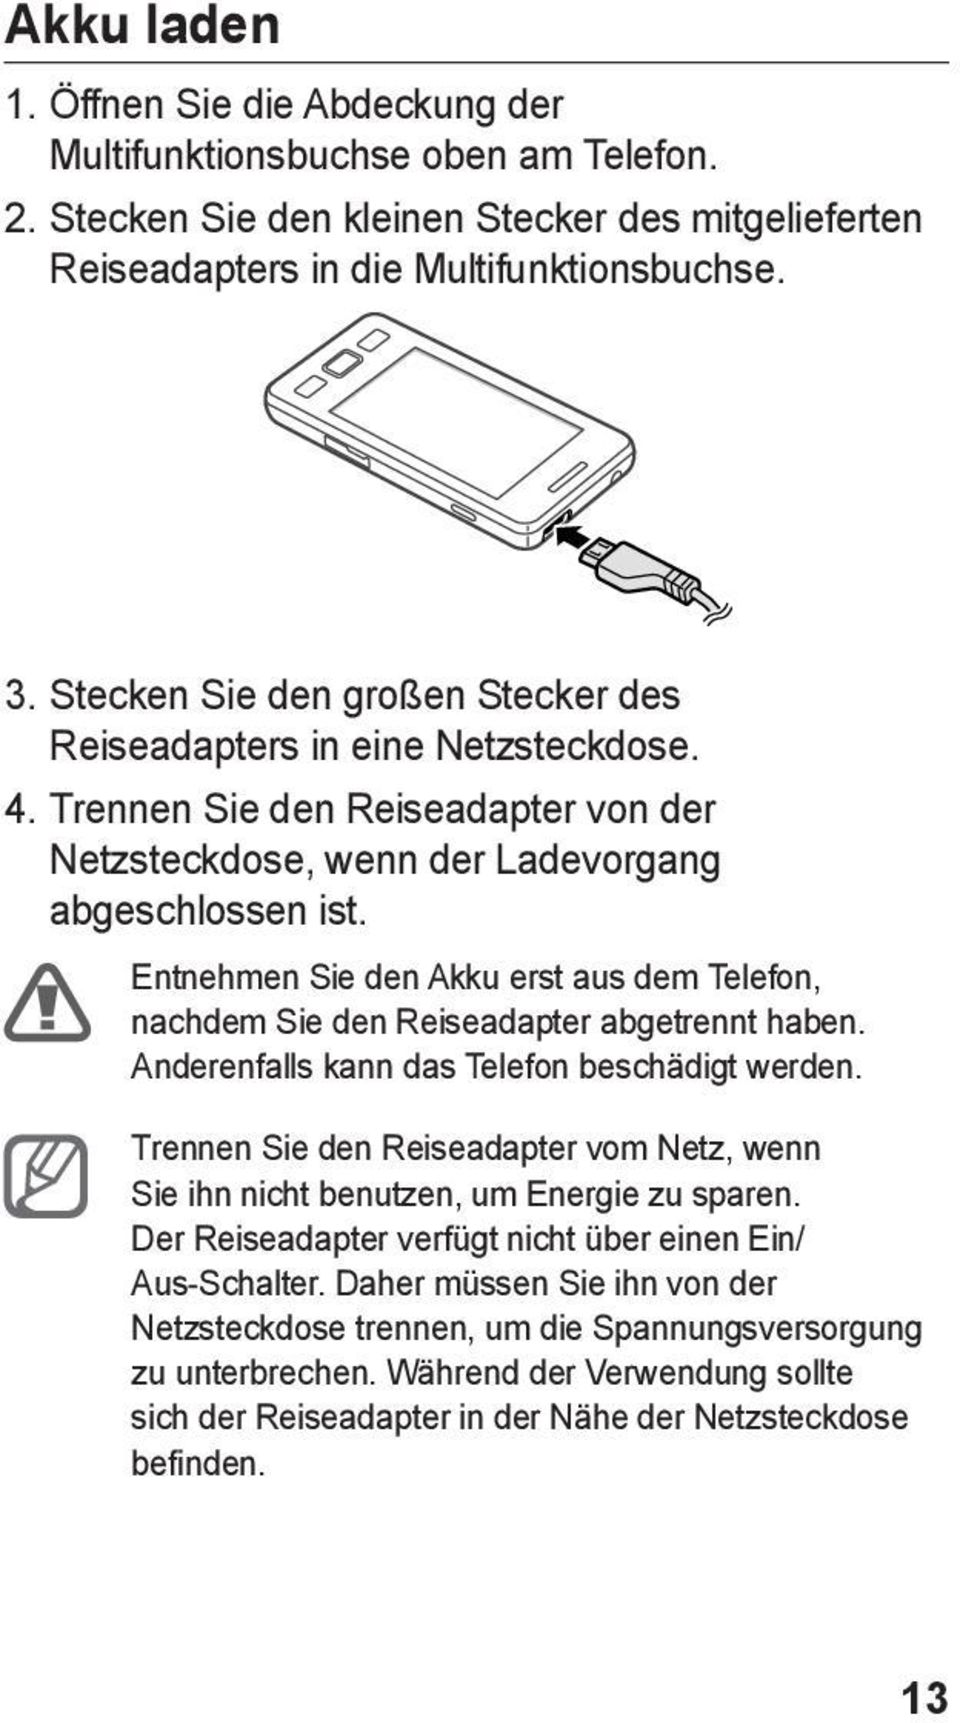 Entnehmen Sie den Akku erst aus dem Telefon, nachdem Sie den Reiseadapter abgetrennt haben. Anderenfalls kann das Telefon beschädigt werden.